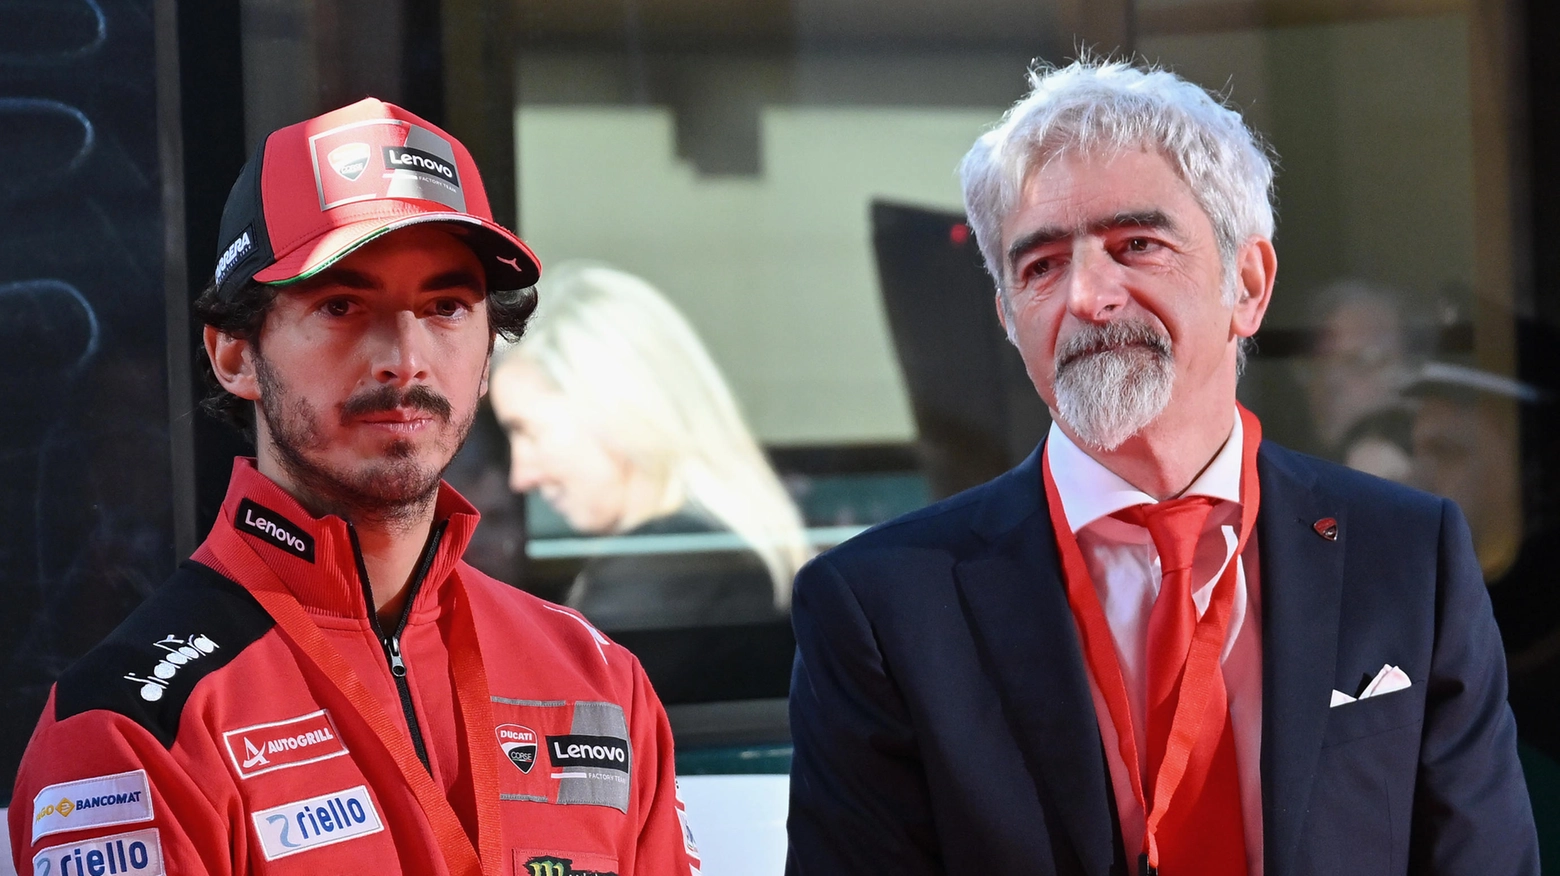 MotoGp, Dall'Igna smentisce Lorenzo: “Marquez e Honda possono andare avanti”